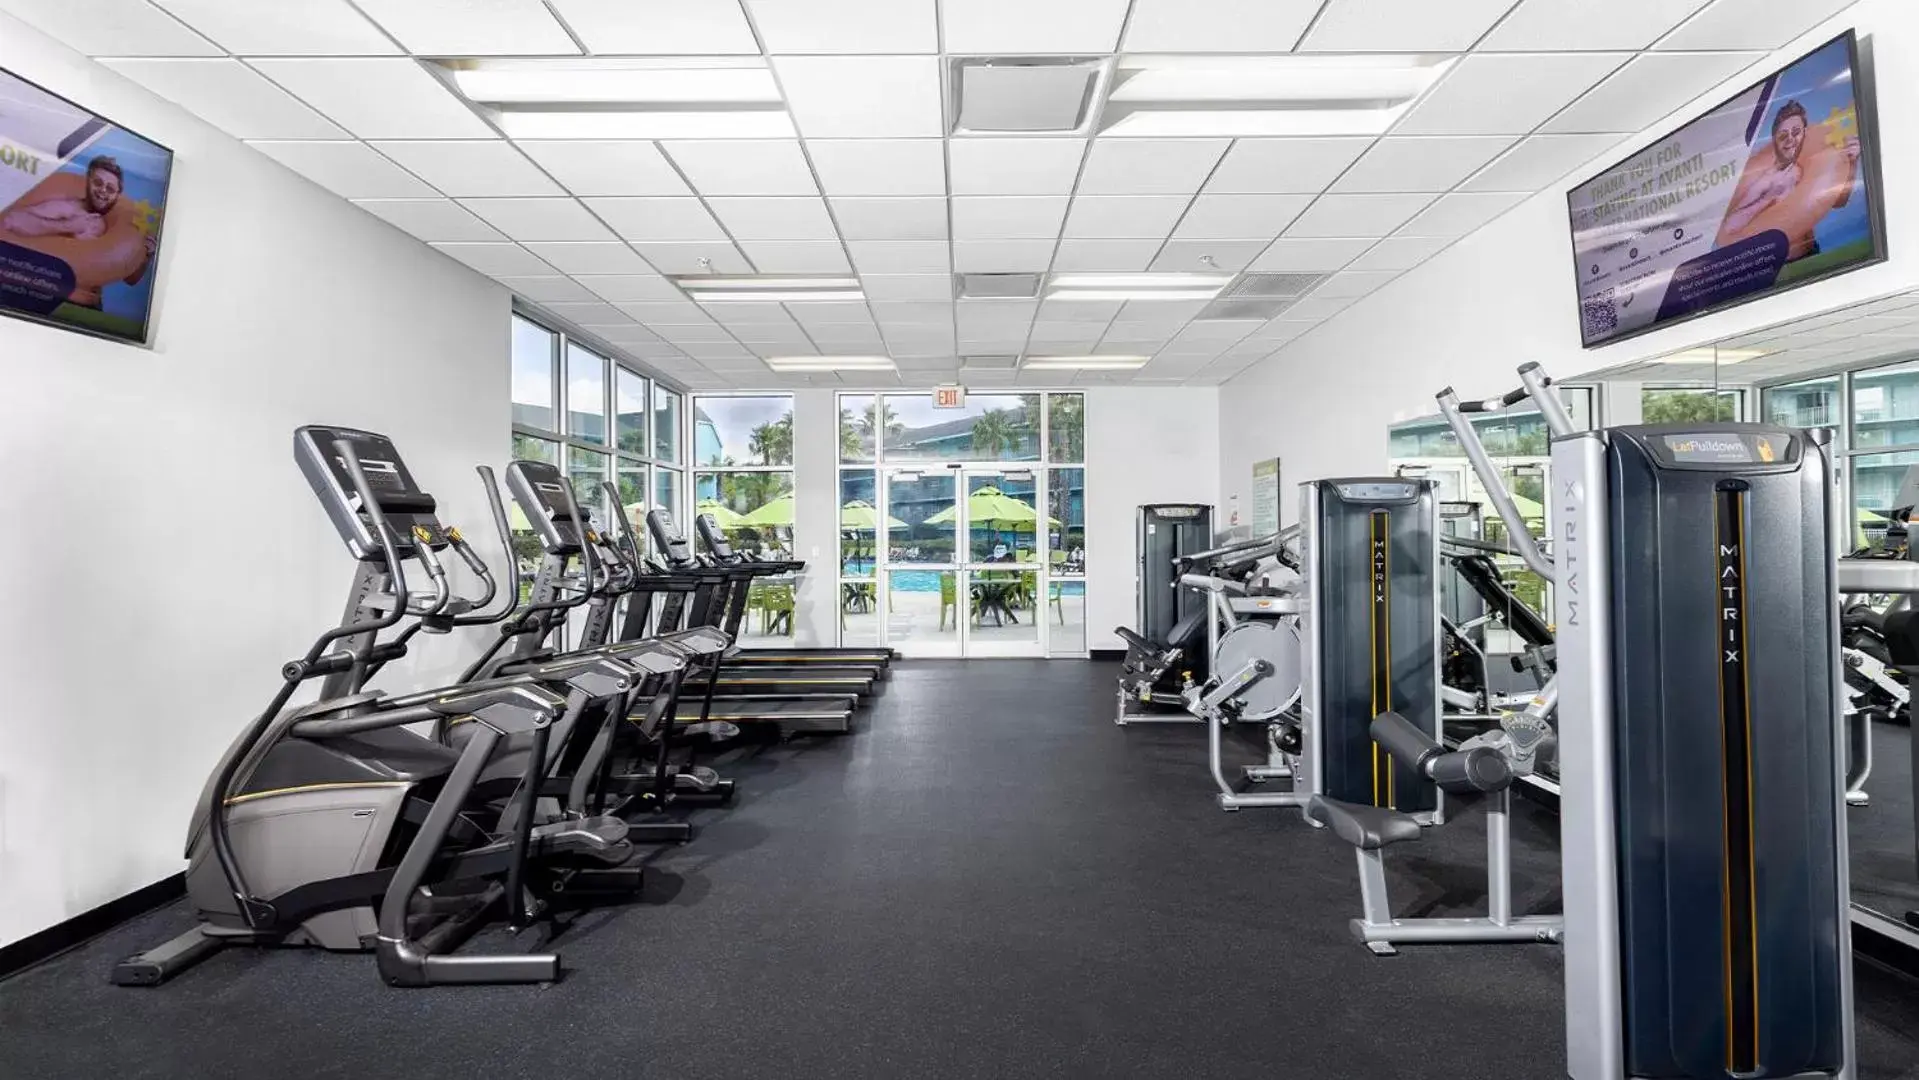 Fitness centre/facilities, Fitness Center/Facilities in Avanti International Resort